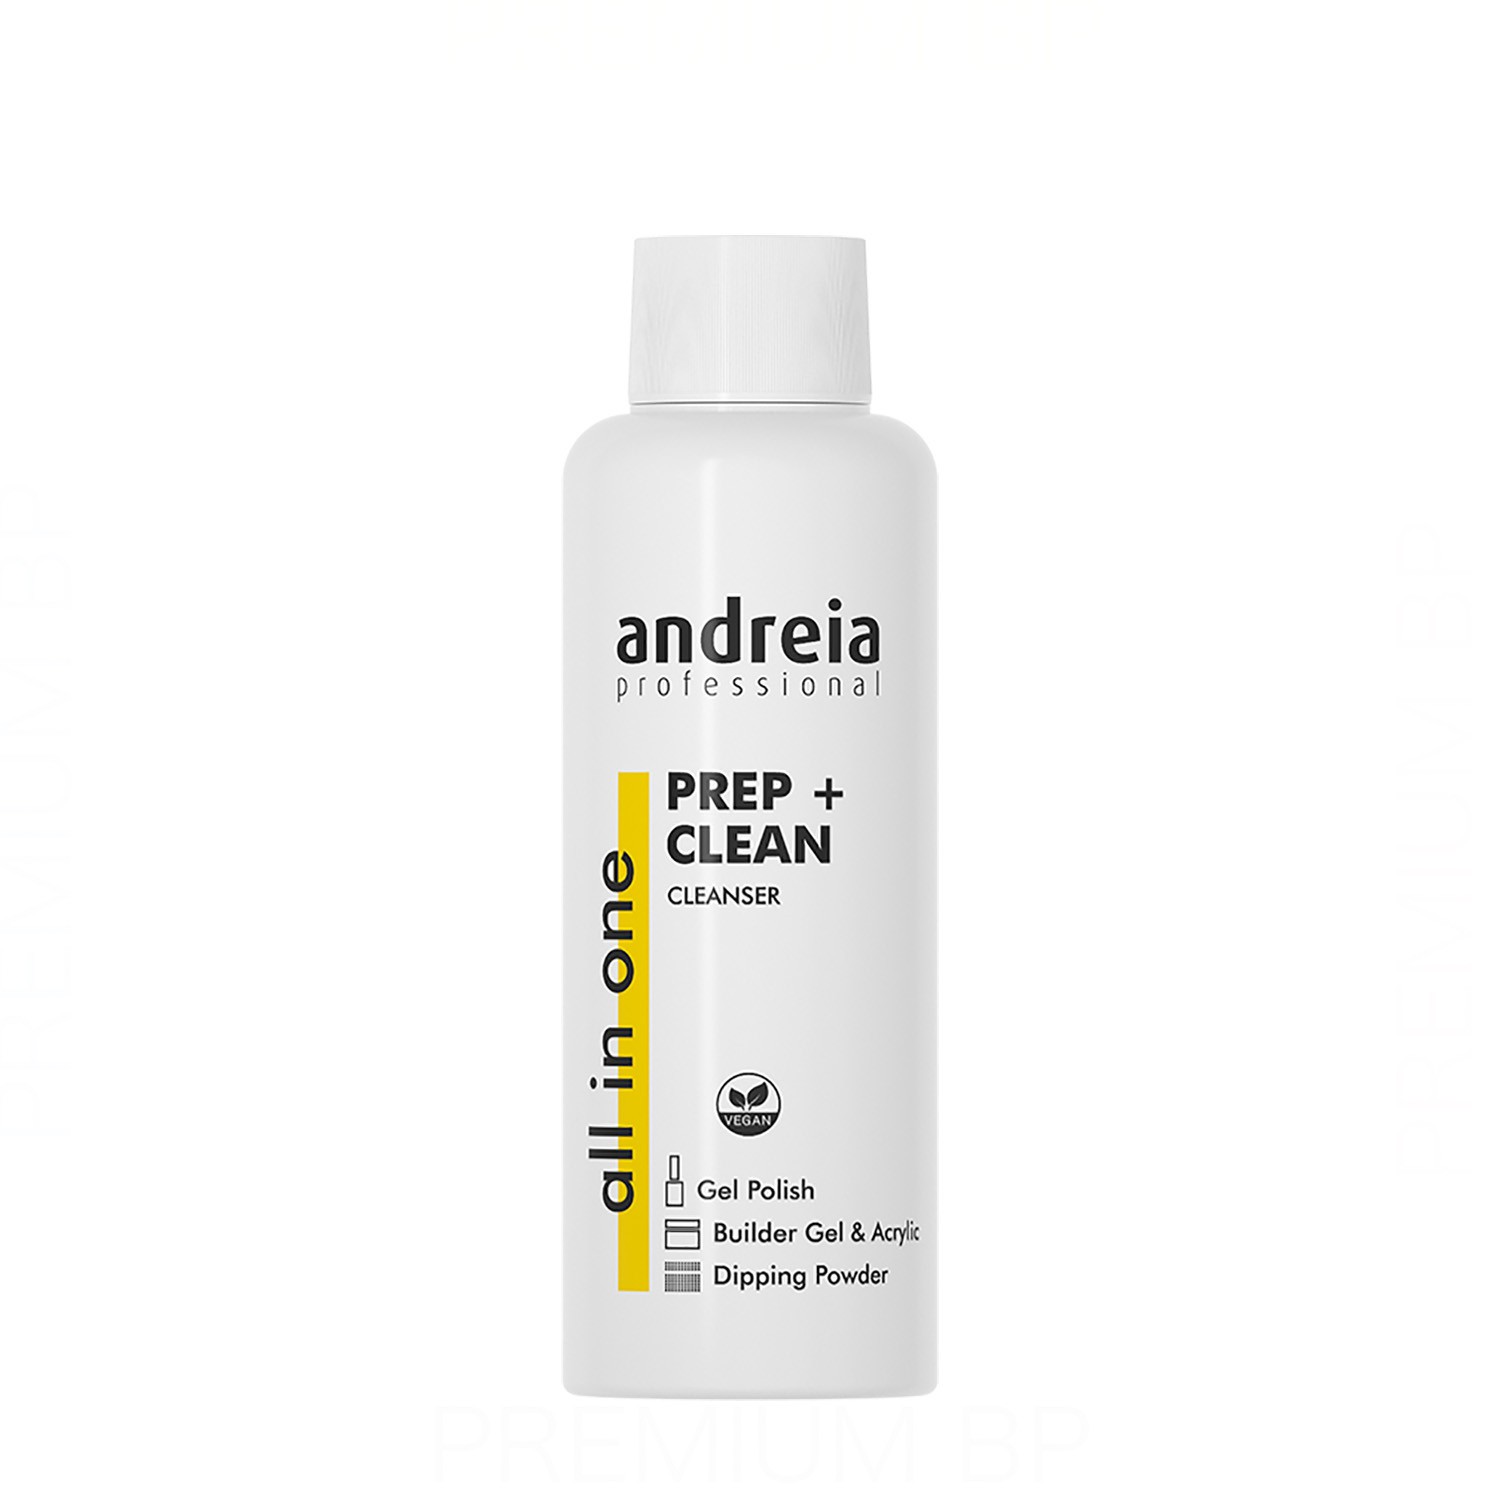 Andreia - Andreia professional all in one prep + clean limpiador 100 ml, prepara y limpia las uñas